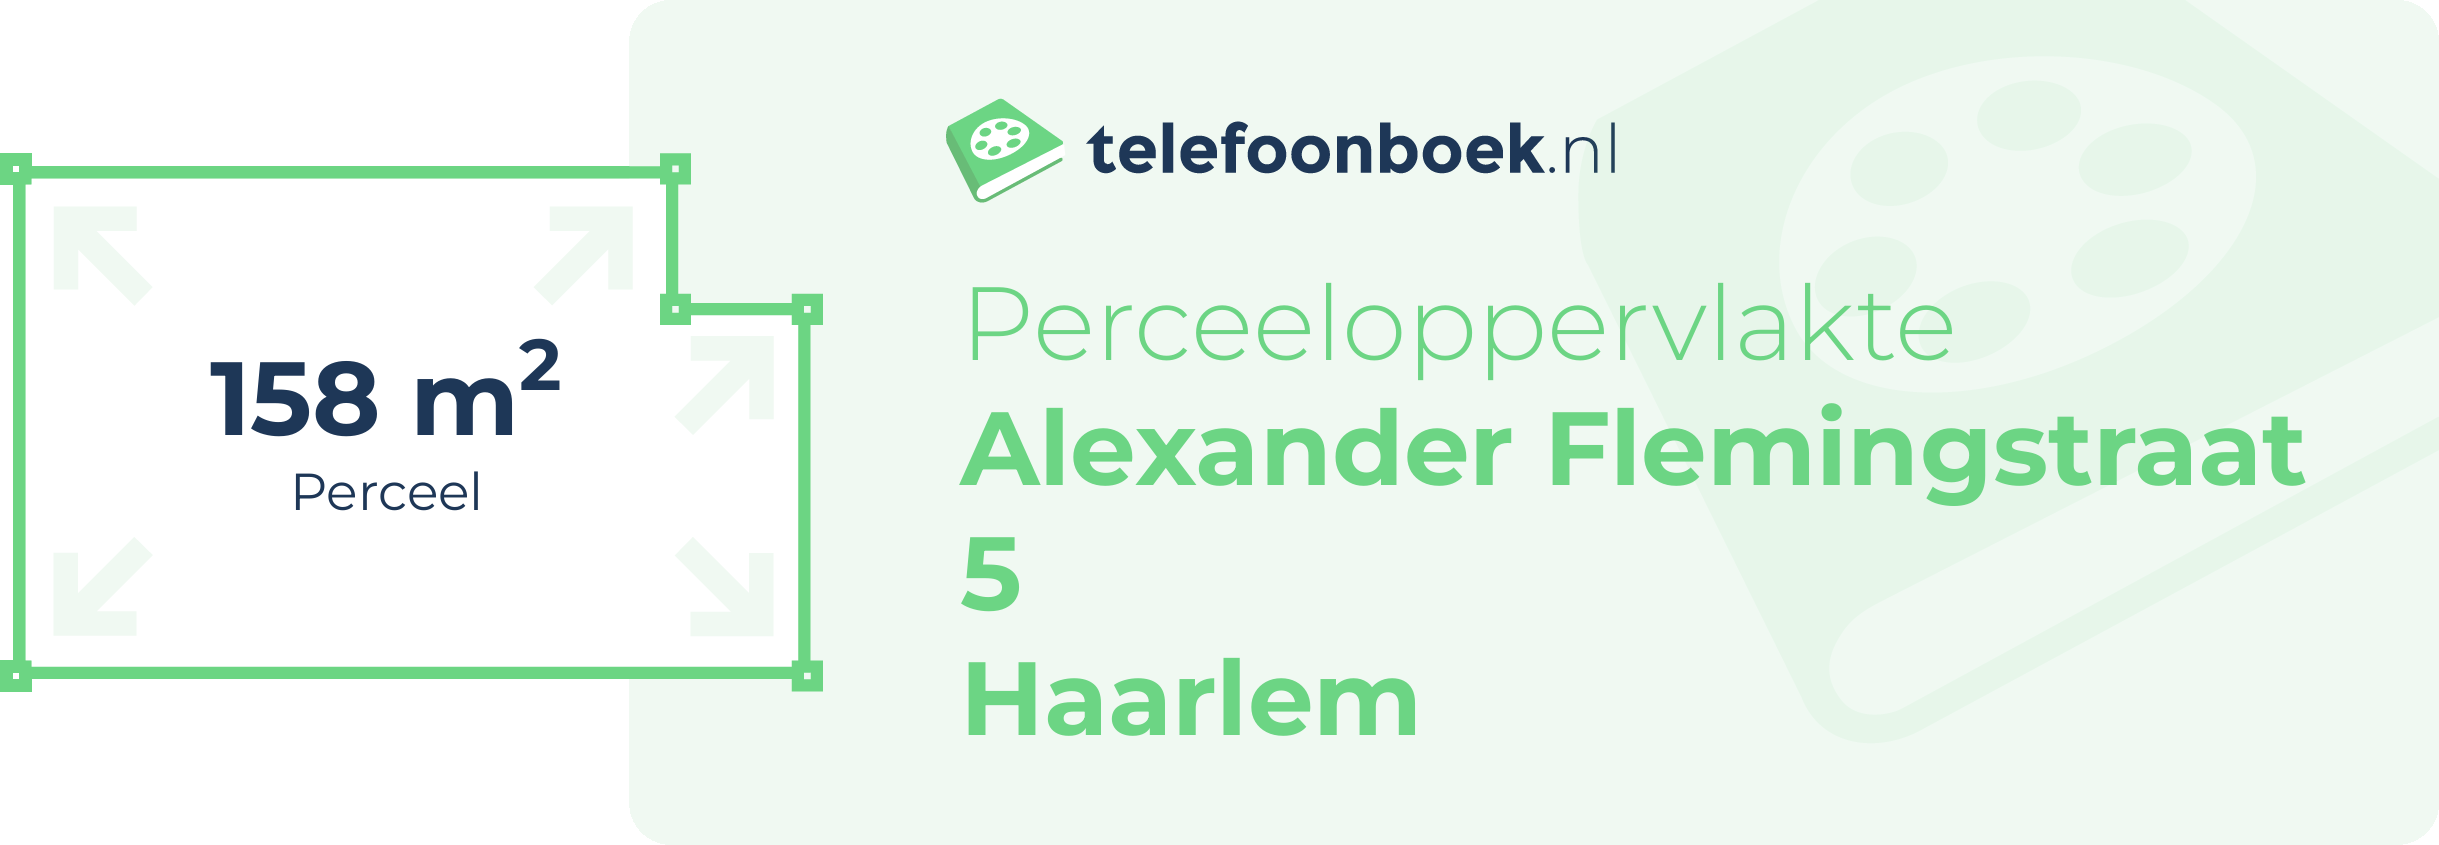 Perceeloppervlakte Alexander Flemingstraat 5 Haarlem